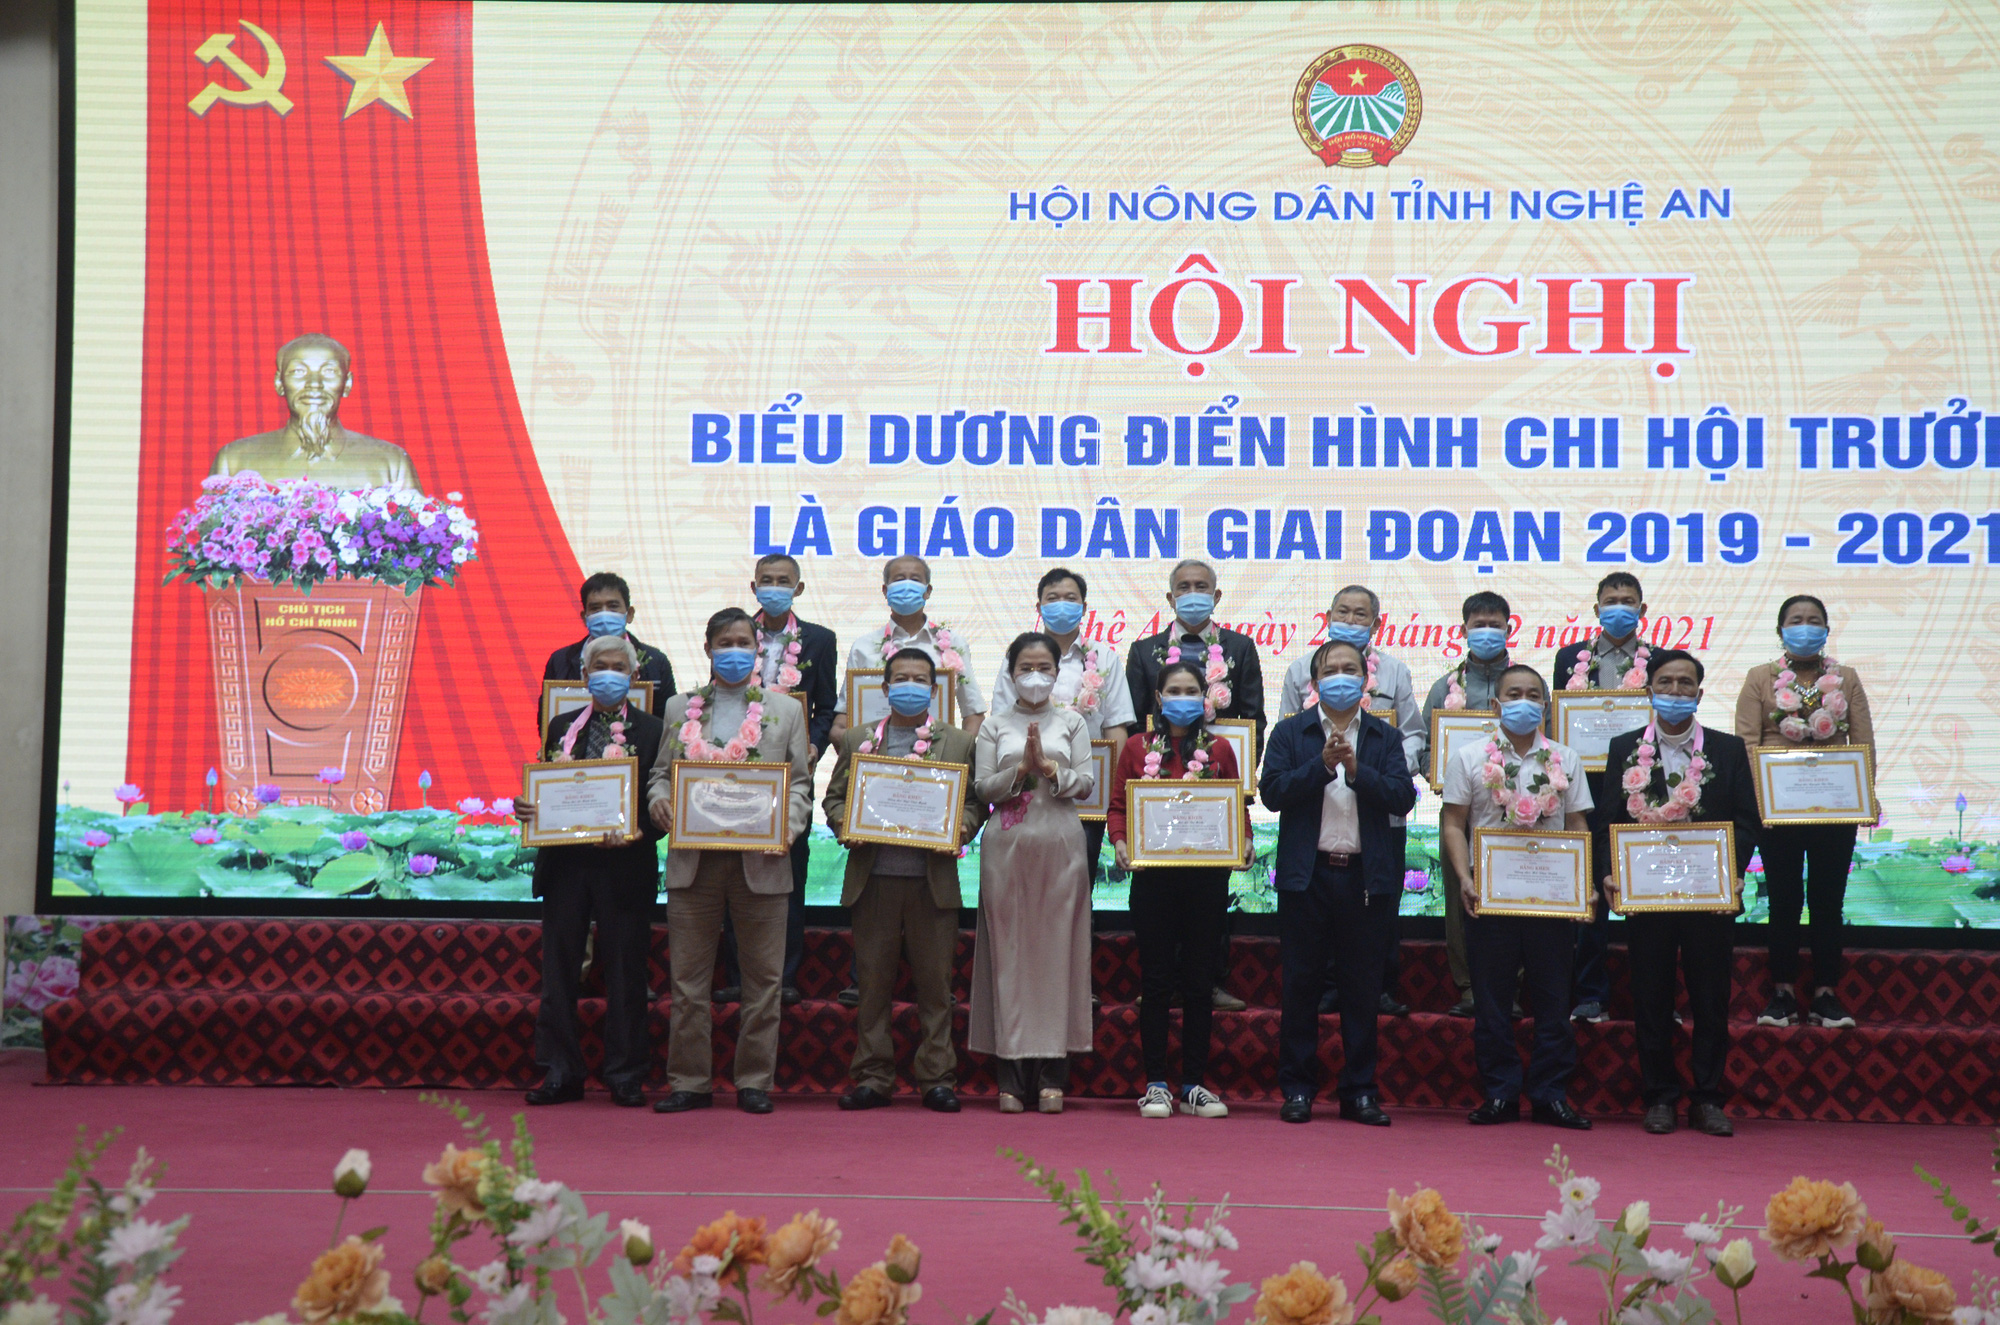 Hội Nông dân tỉnh Nghệ An: Khen thưởng 48 điển hình chi hội trưởng là giáo dân - Ảnh 1.